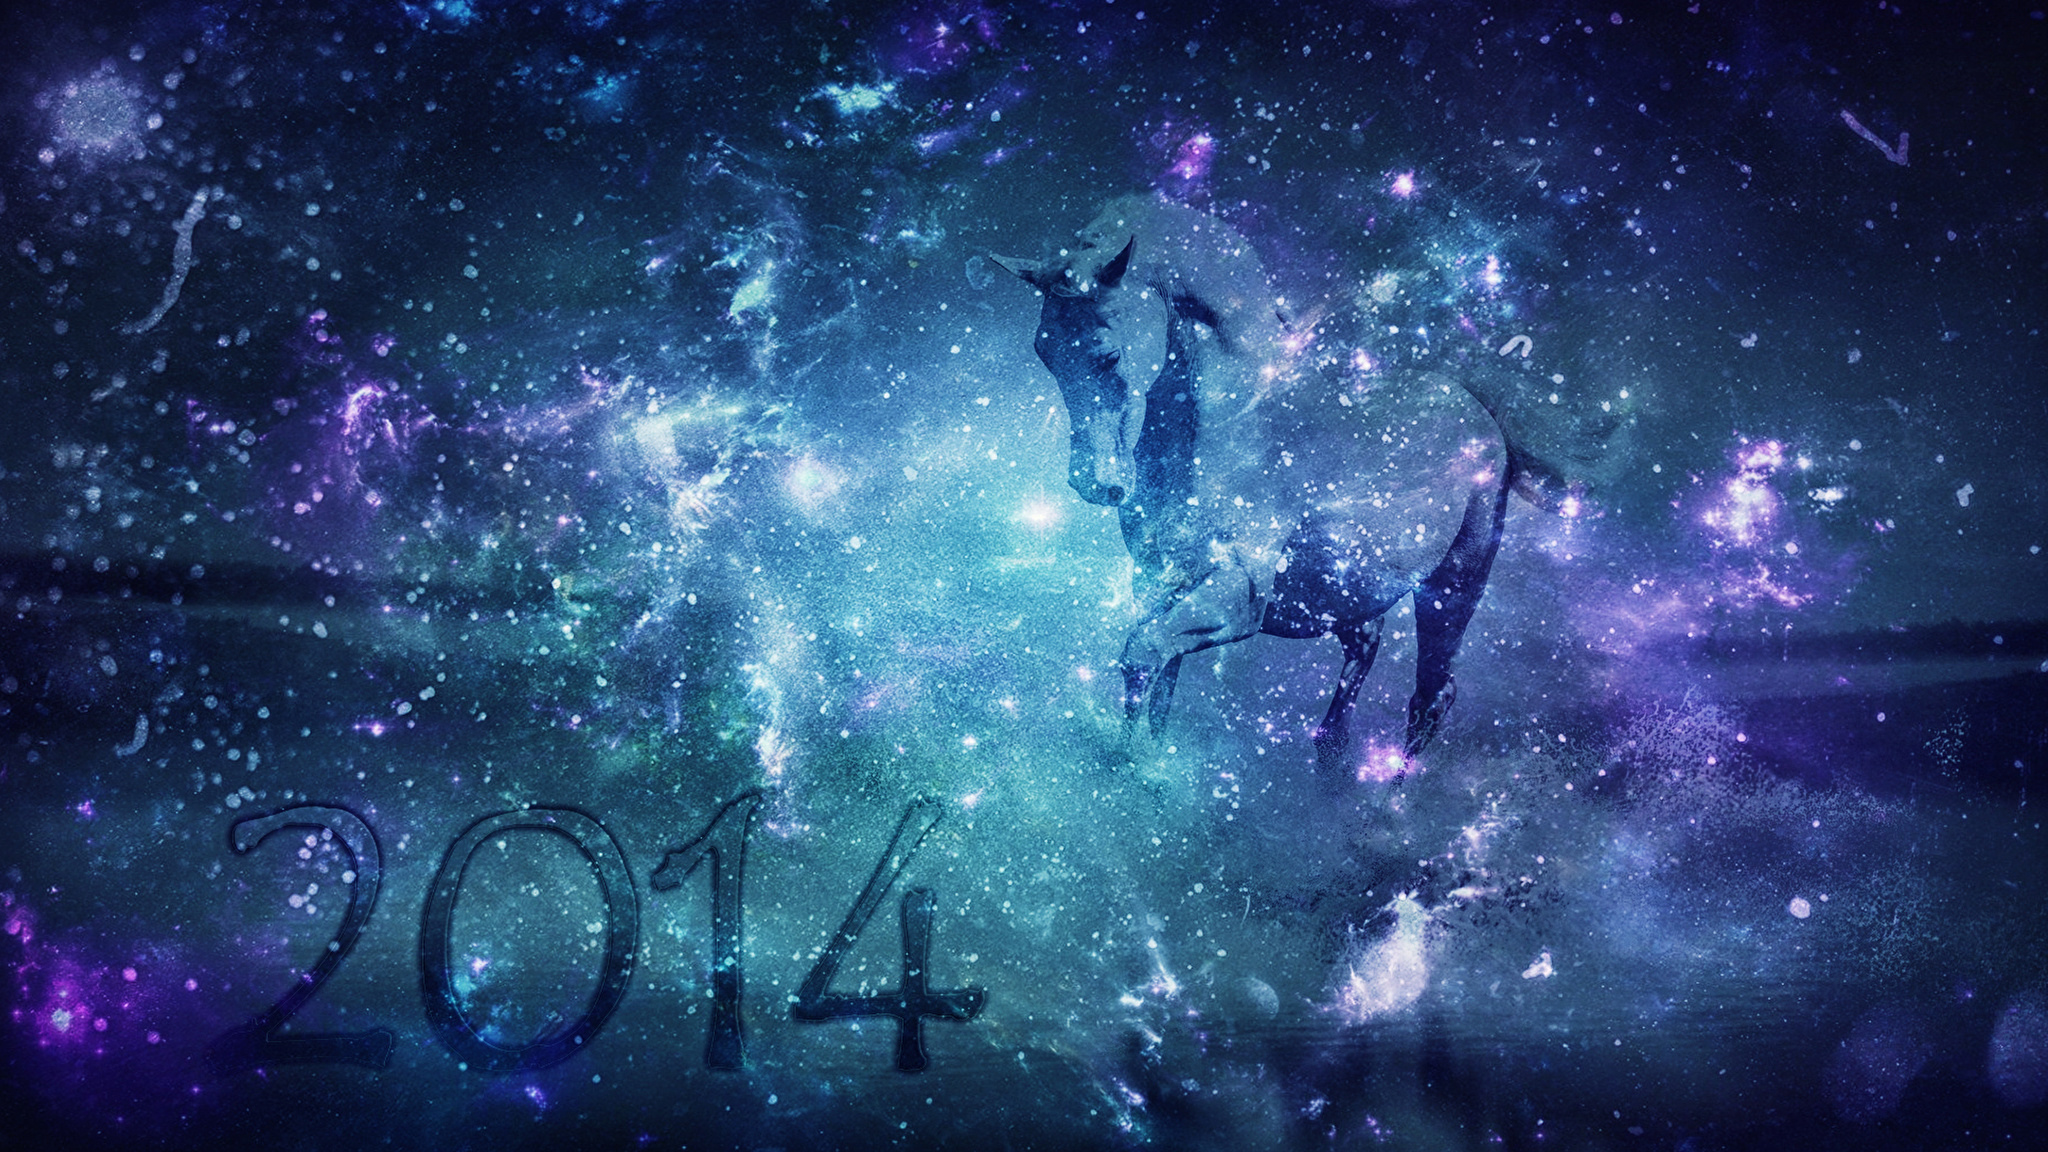 Картинки на заставку телефона 2024. Космос арт. Новый год в космосе. Обои космос. Лошадь на фоне космоса.